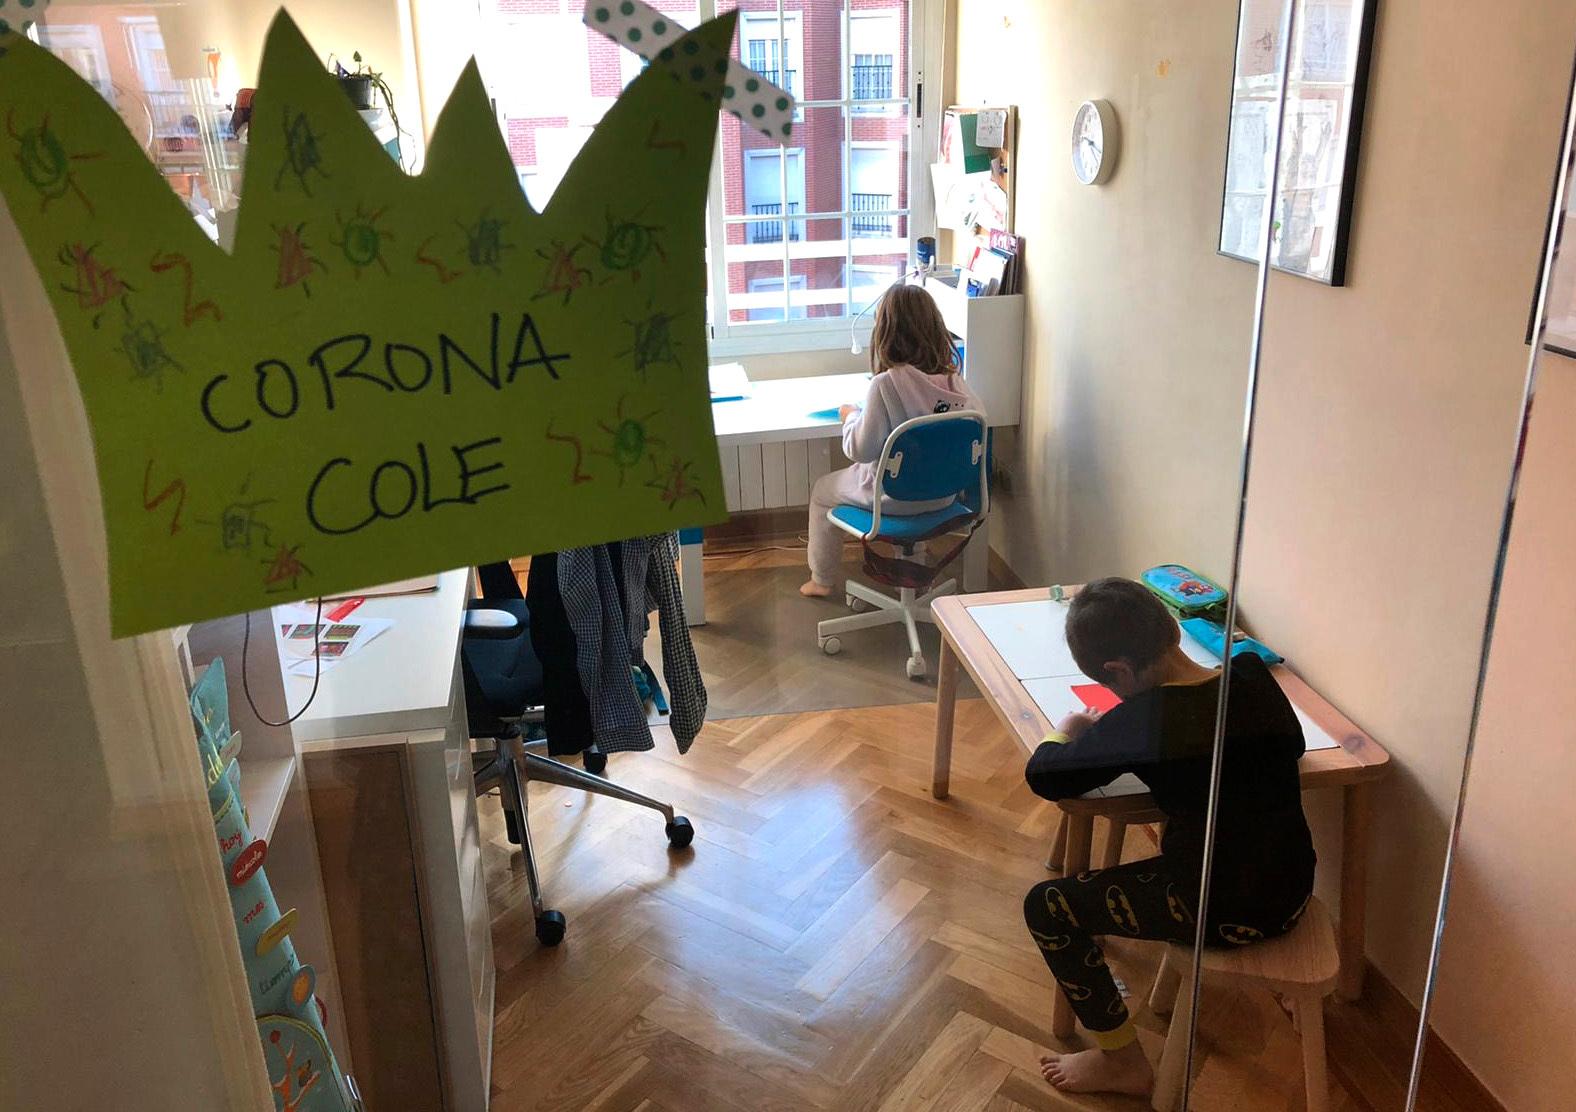 Två barn som sköter skolarbetet i sitt hem i Madrid efter att skolorna stängts med anledning av coronaviruset.